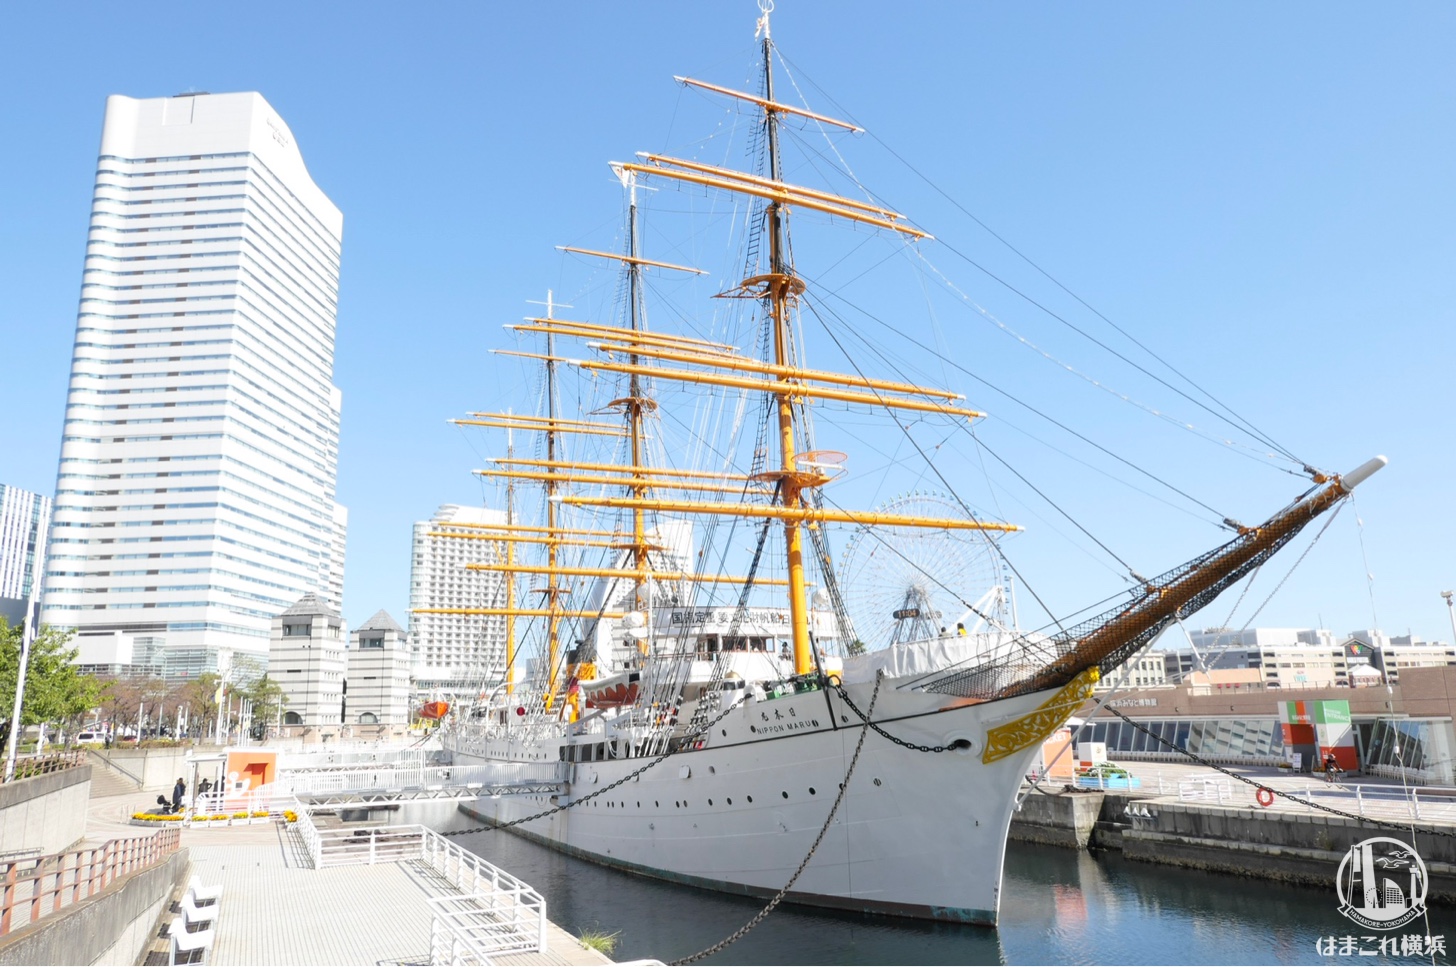 帆船日本丸が総帆展帆 29枚の帆、広がる - ヨコハマ経済新聞